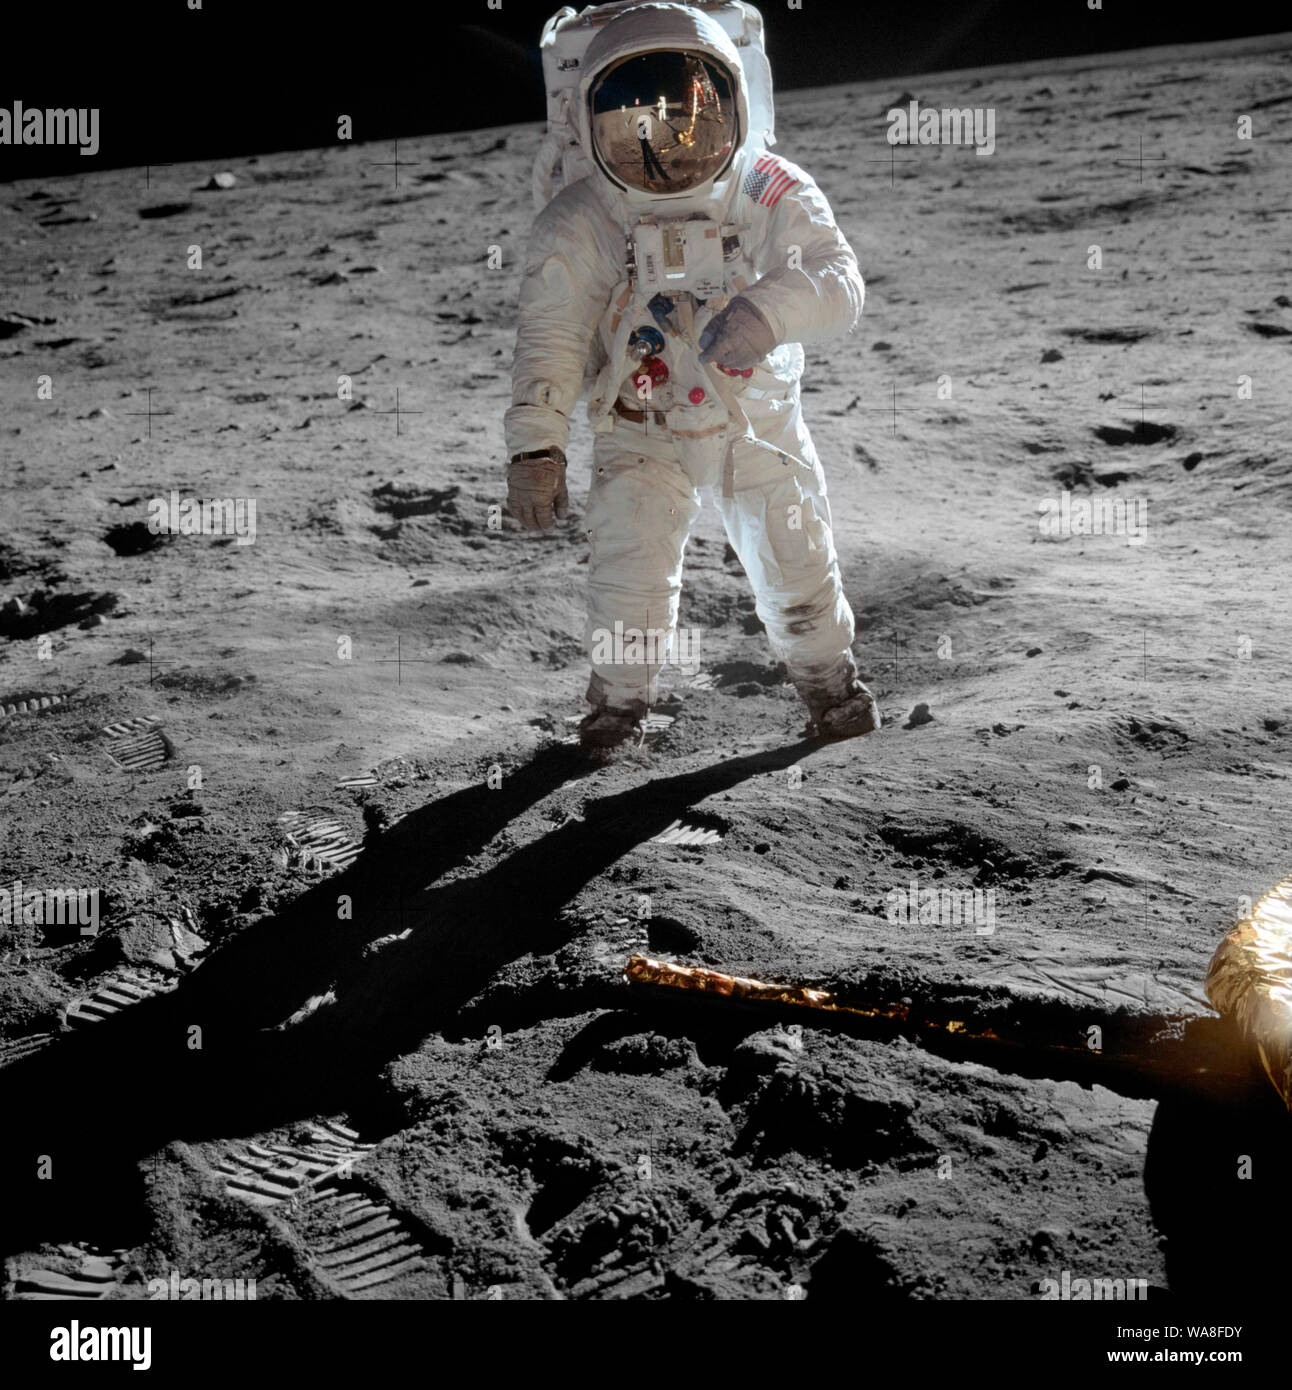 L'astronaute Buzz Aldrin sur la lune - Buzz Aldrin astronaute, pilote du module lunaire, se dresse sur la surface de la lune près de la jambe du module lunaire, l'Aigle, au cours de l'Apollo 11 sur la lune. L'astronaute Neil Armstrong, commandant de mission, a pris cette photo avec une caméra 70mm surface lunaire. Alors qu'Armstrong et Aldrin dans le module lunaire est descendu à explorer la mer de la tranquillité, de l'astronaute Michael Collins, pilote du module de commande, resté en orbite lunaire avec la commande et module de service, Colombie-Britannique. Juillet 1969 Banque D'Images